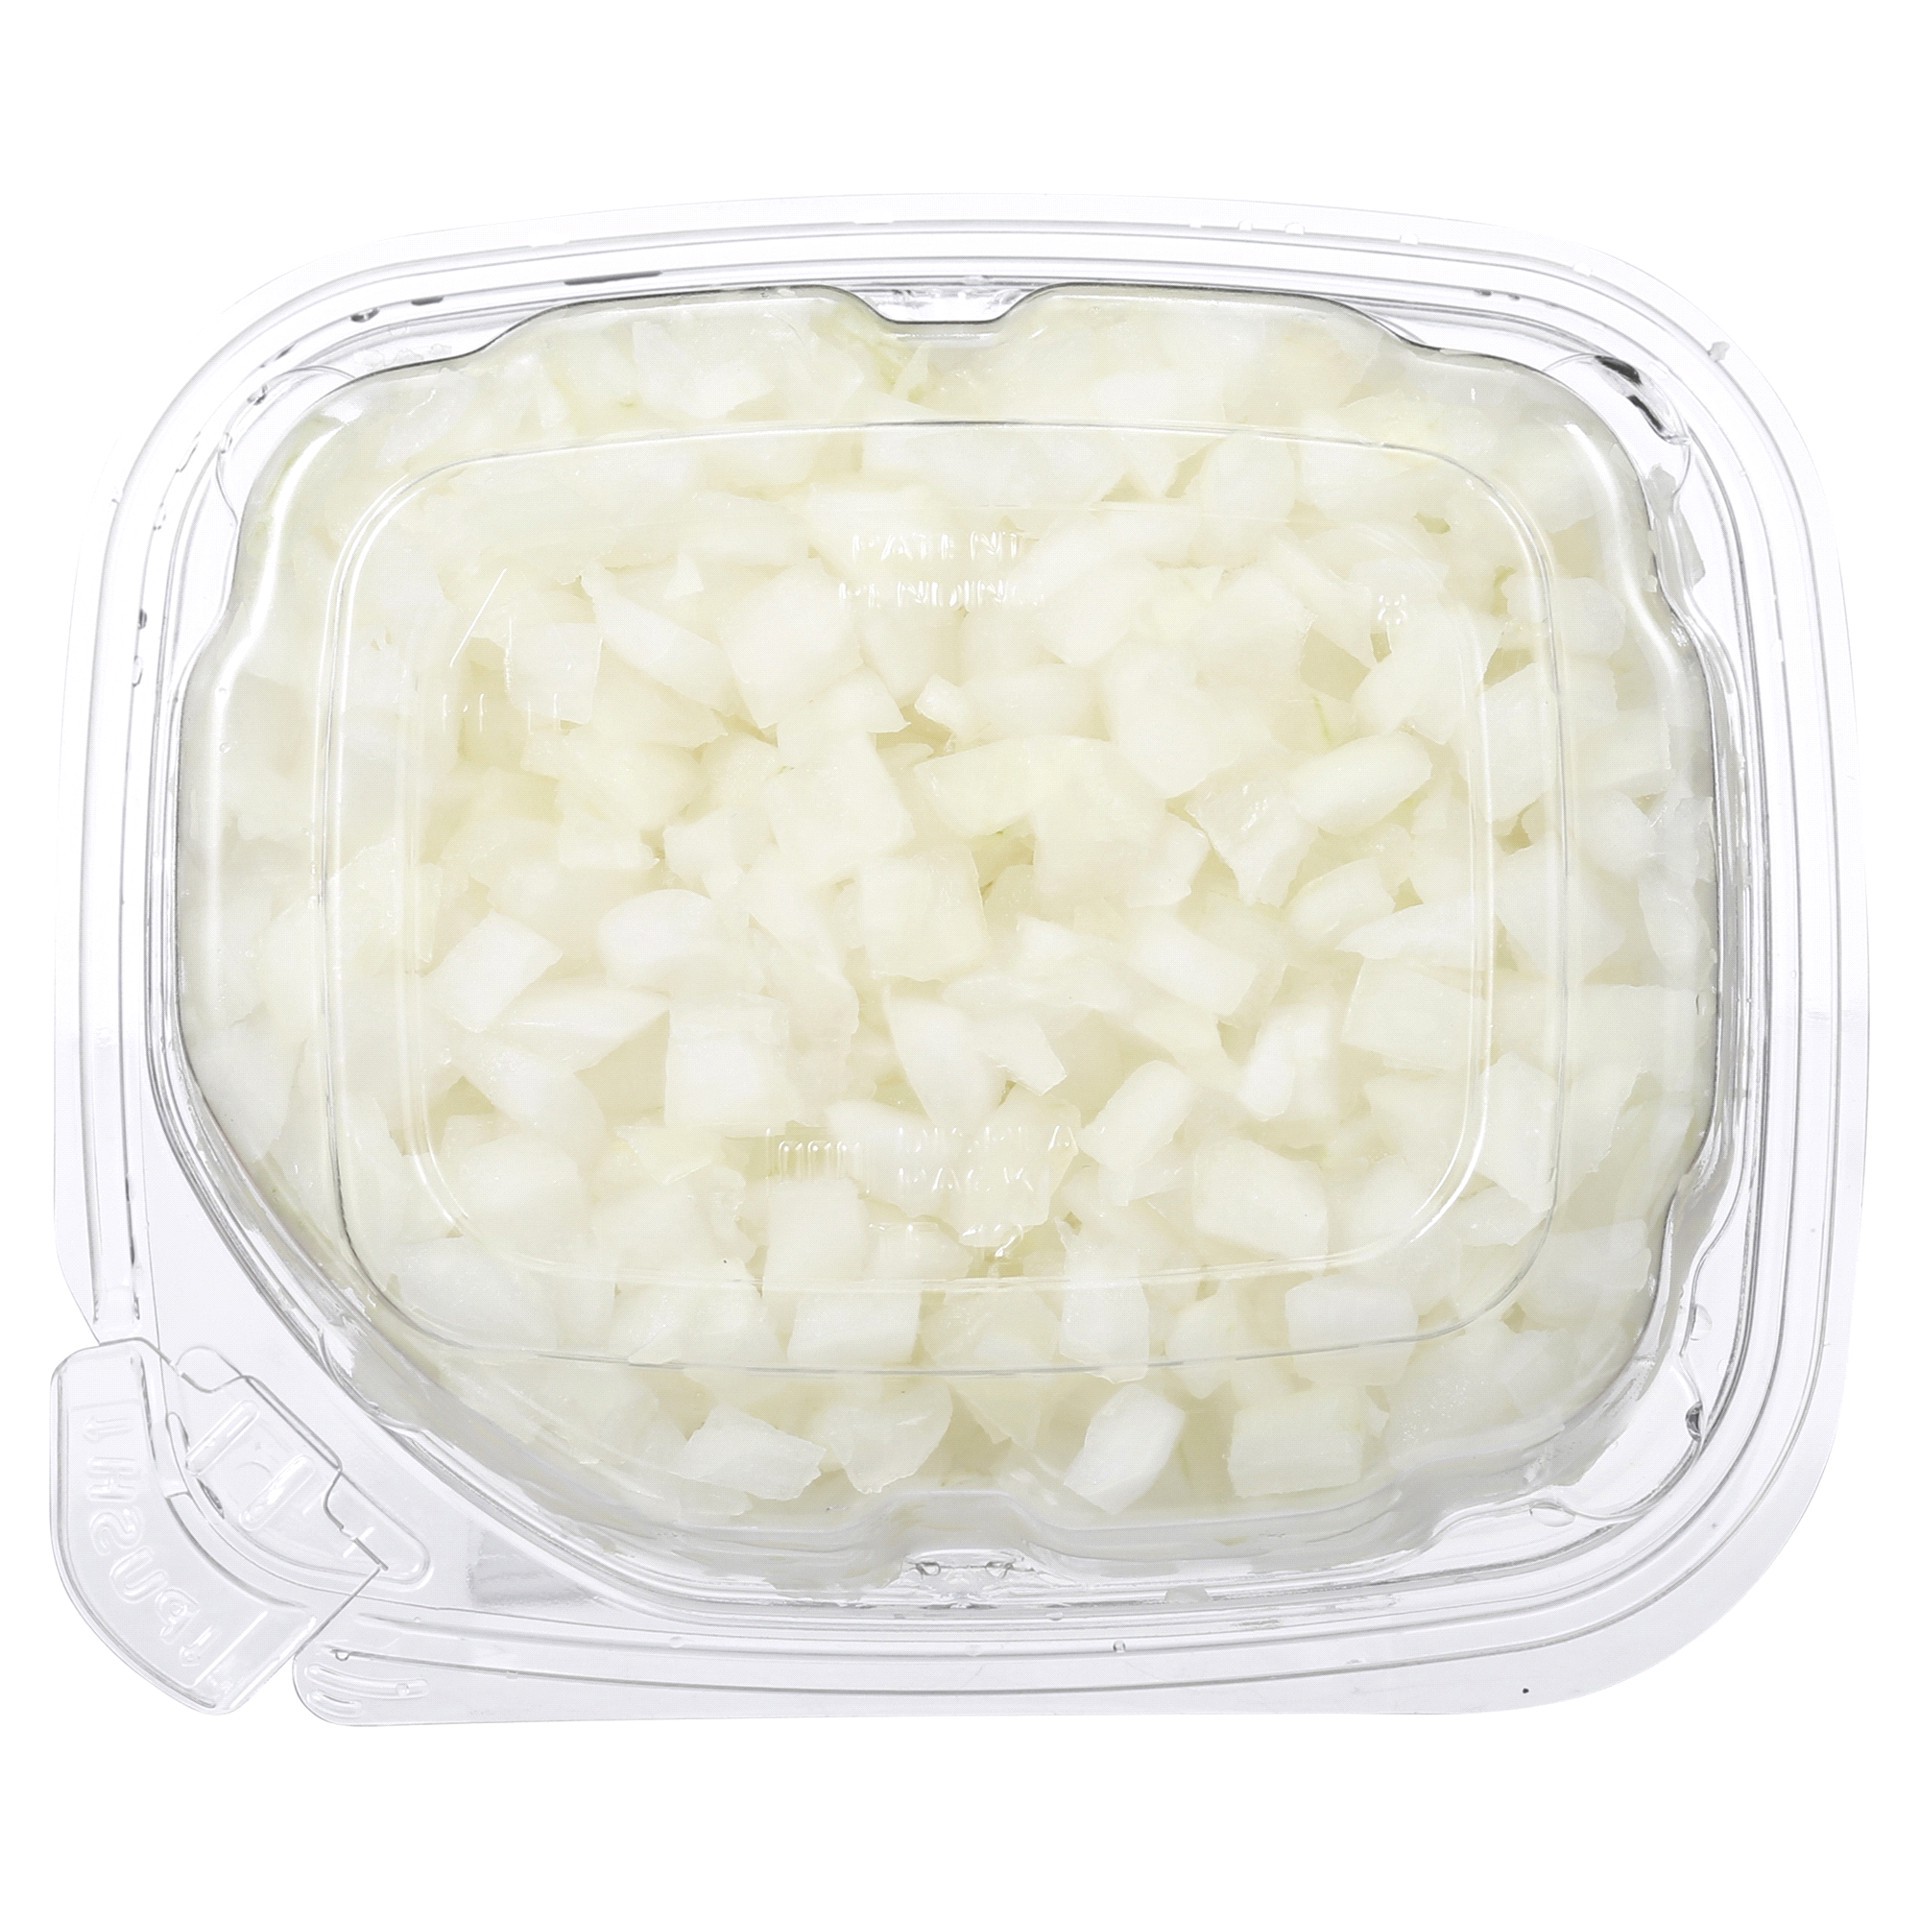 slide 21 of 29, Fresh from Meijer Diced White Onion, 7 oz, 7 oz